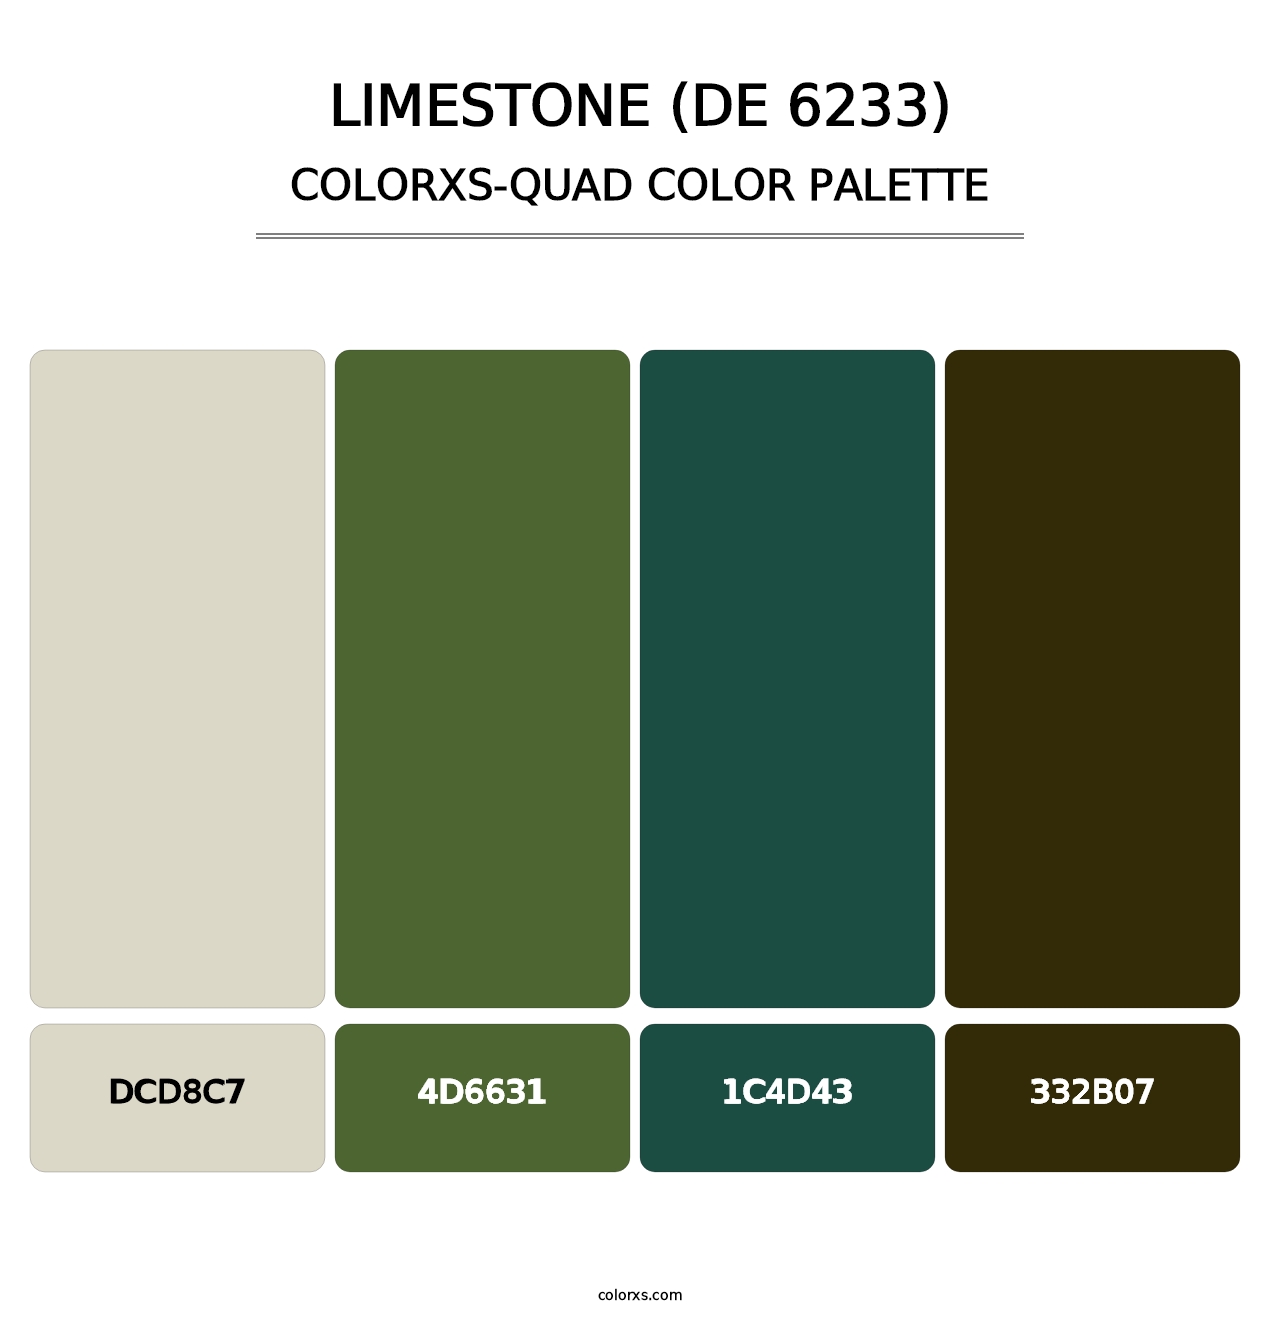 Limestone (DE 6233) - Colorxs Quad Palette